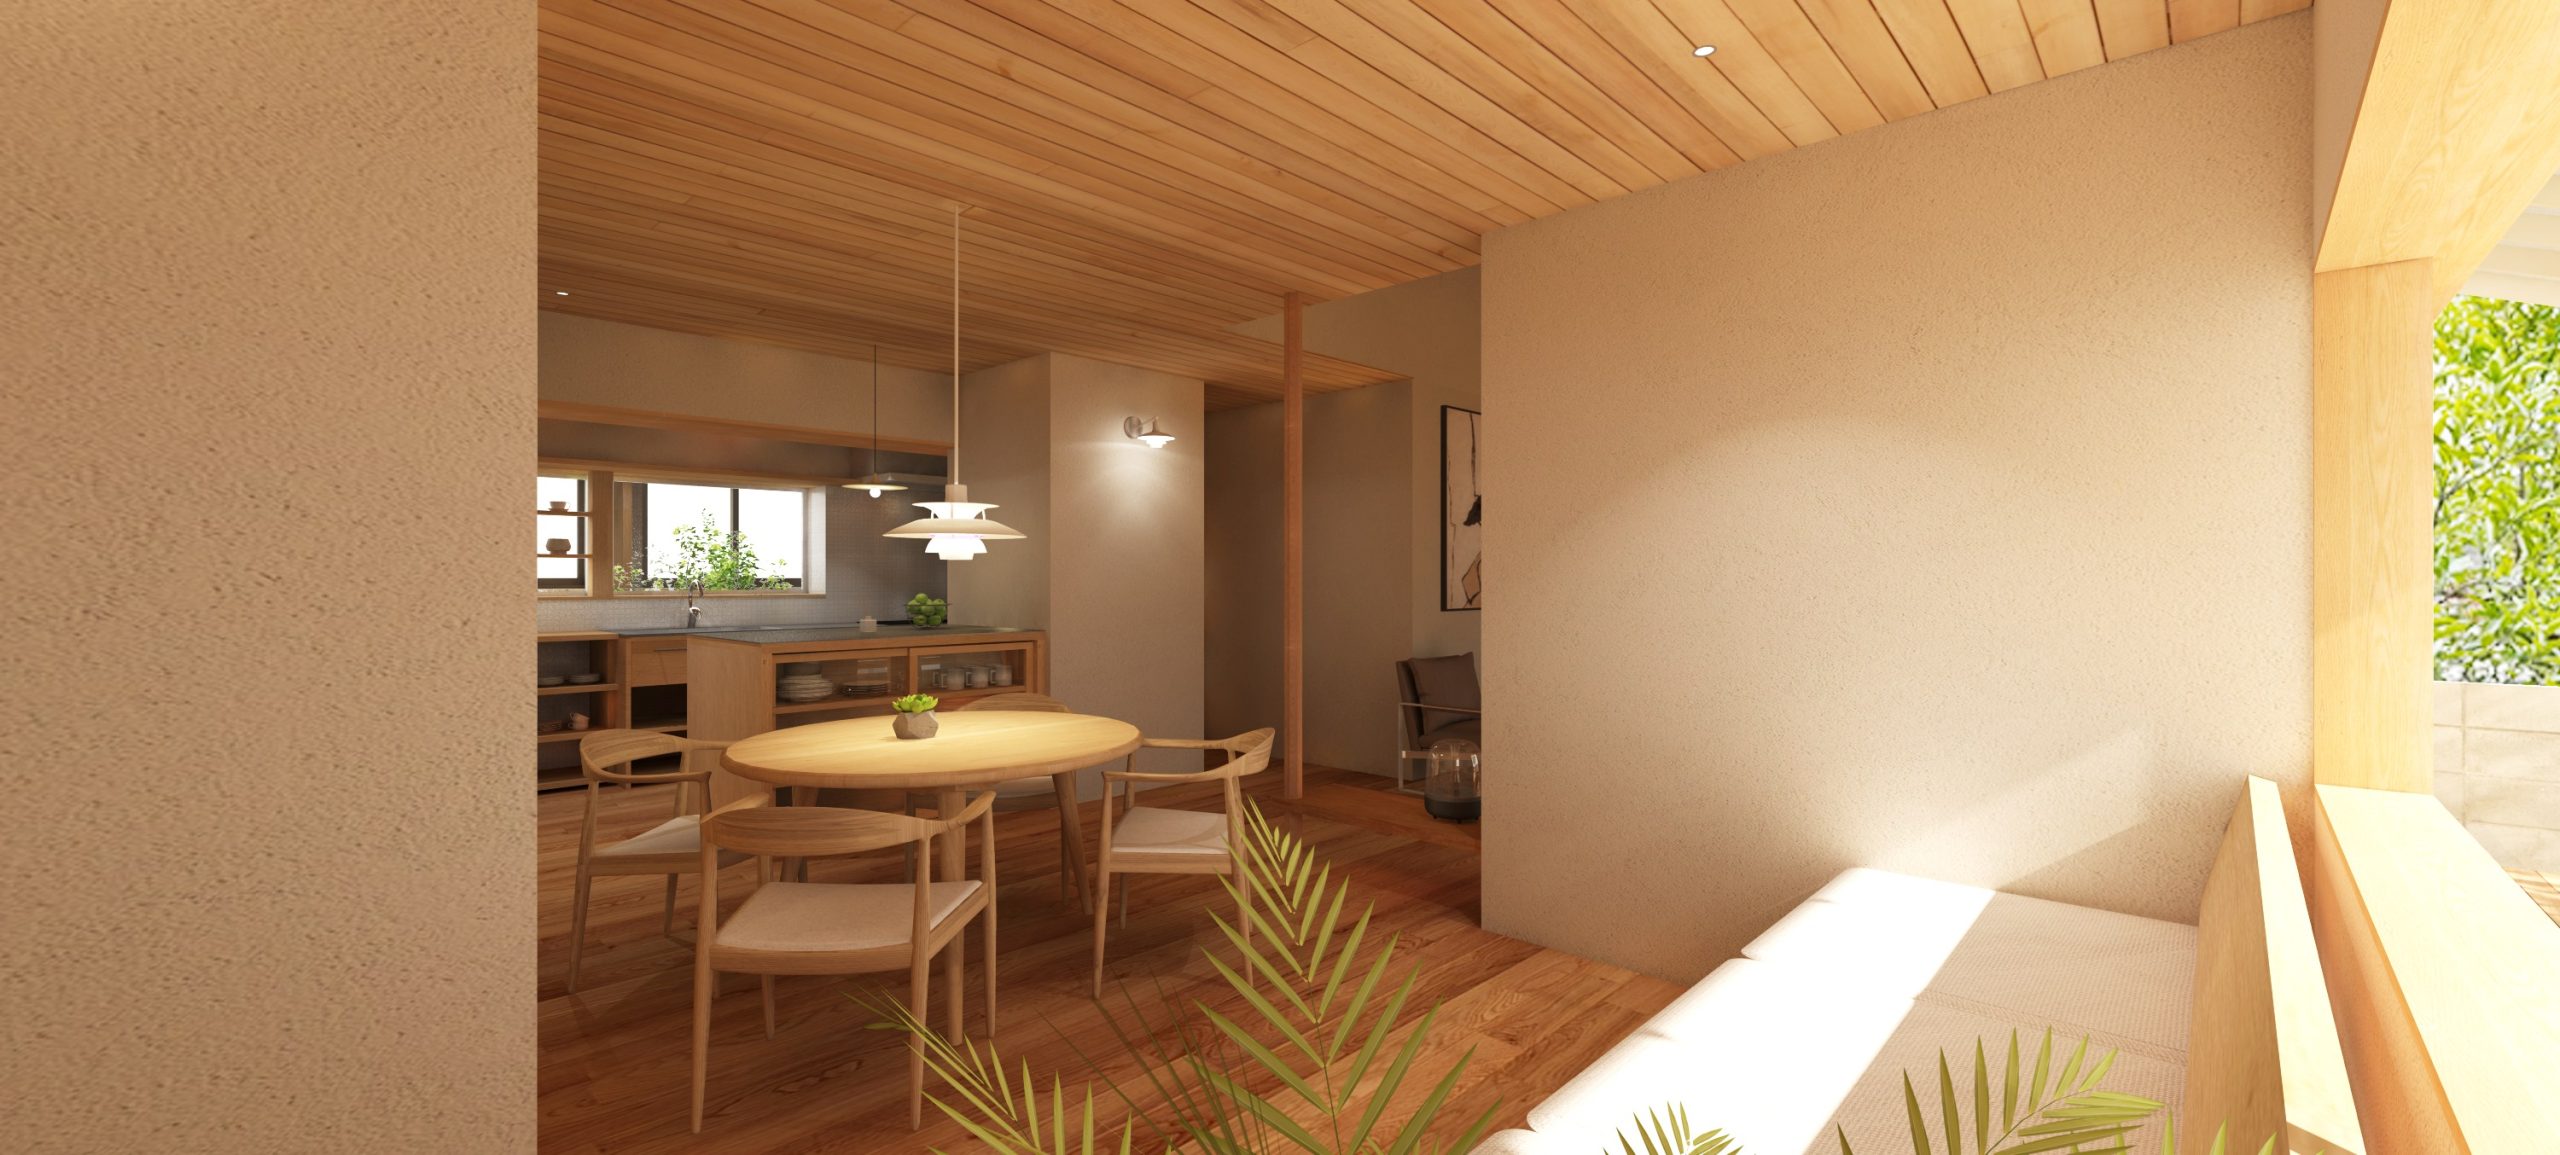 ひばりガ丘の家|atelier thu | 兵庫、神戸の建築設計事務所